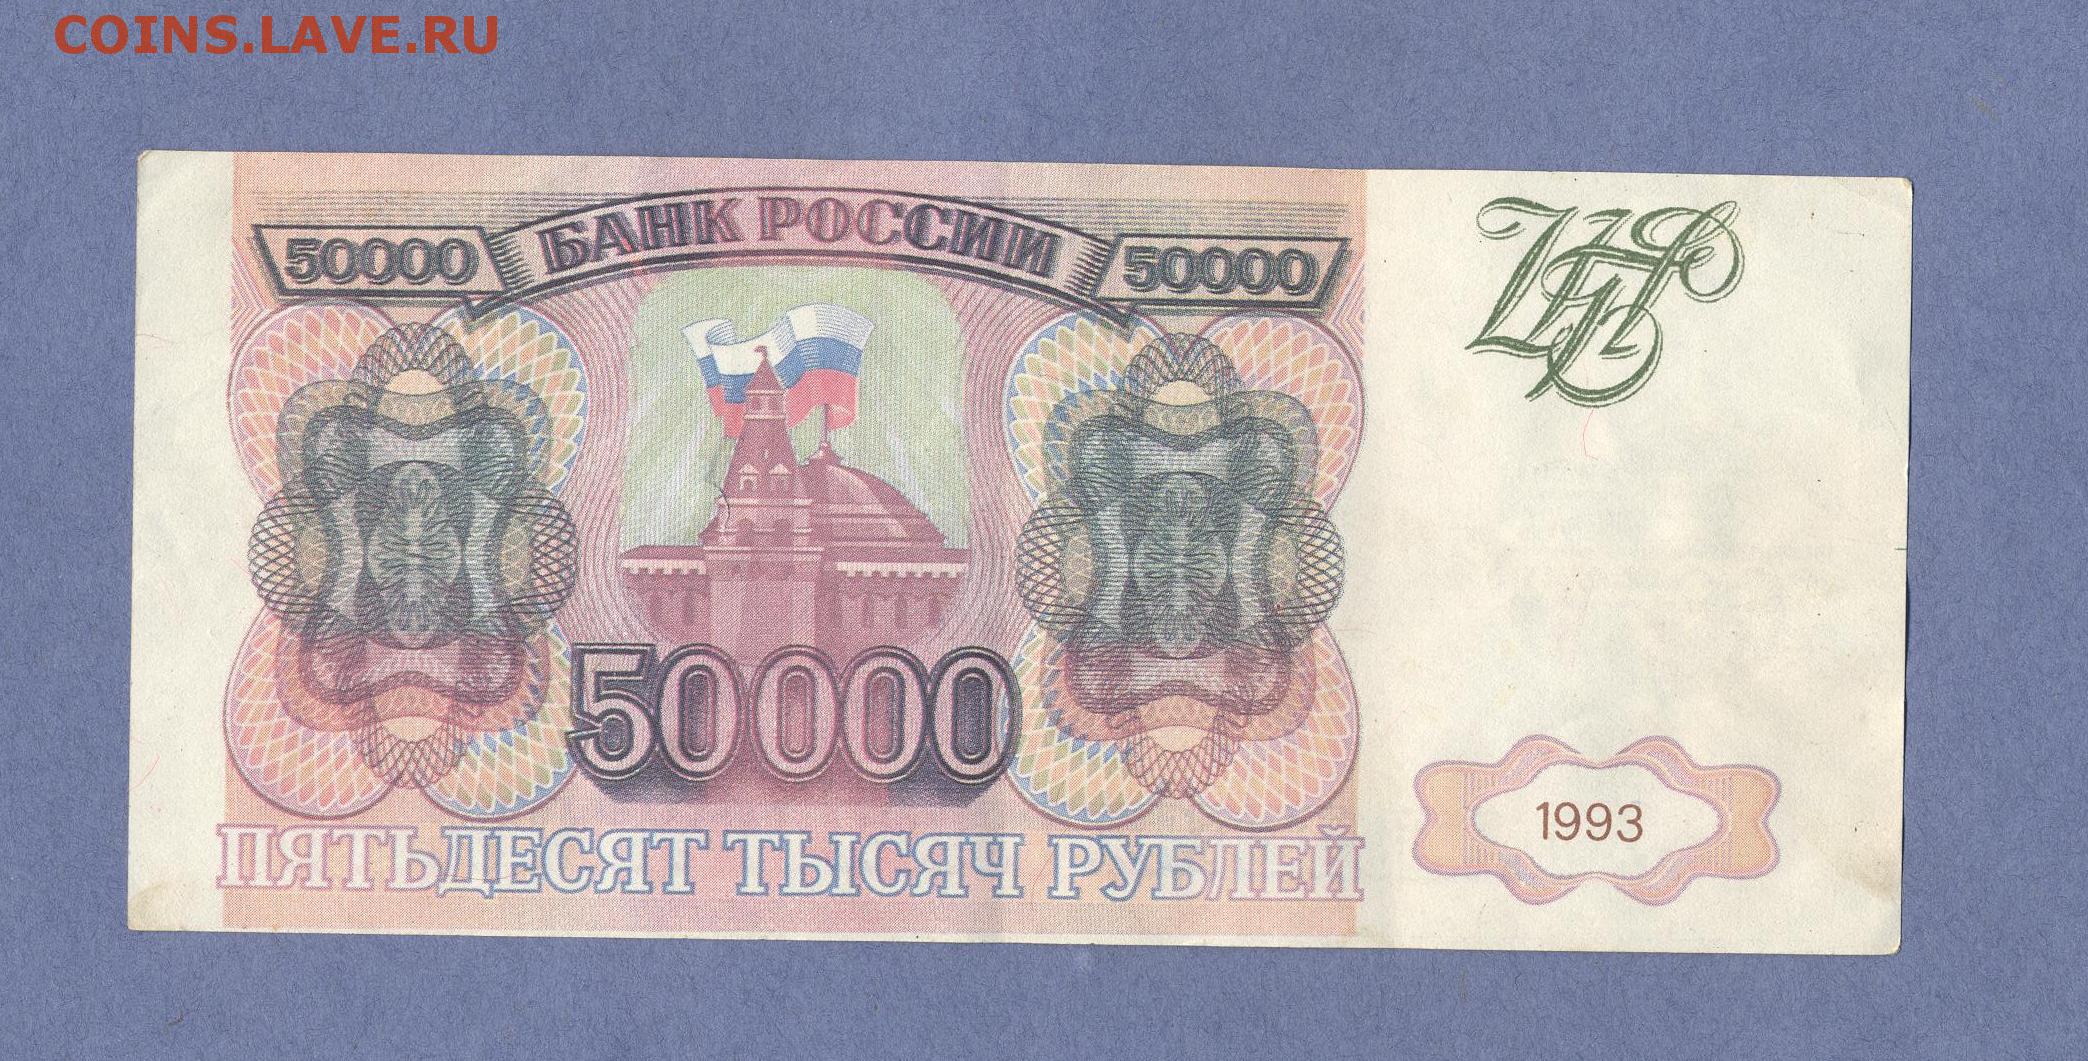 50000 батов в рублях. Банкнота 50000 рублей 1993. 500000 Рублей 1993. 500000 Рублей 1993 года. Купюра 50000 рублей 1993 года.